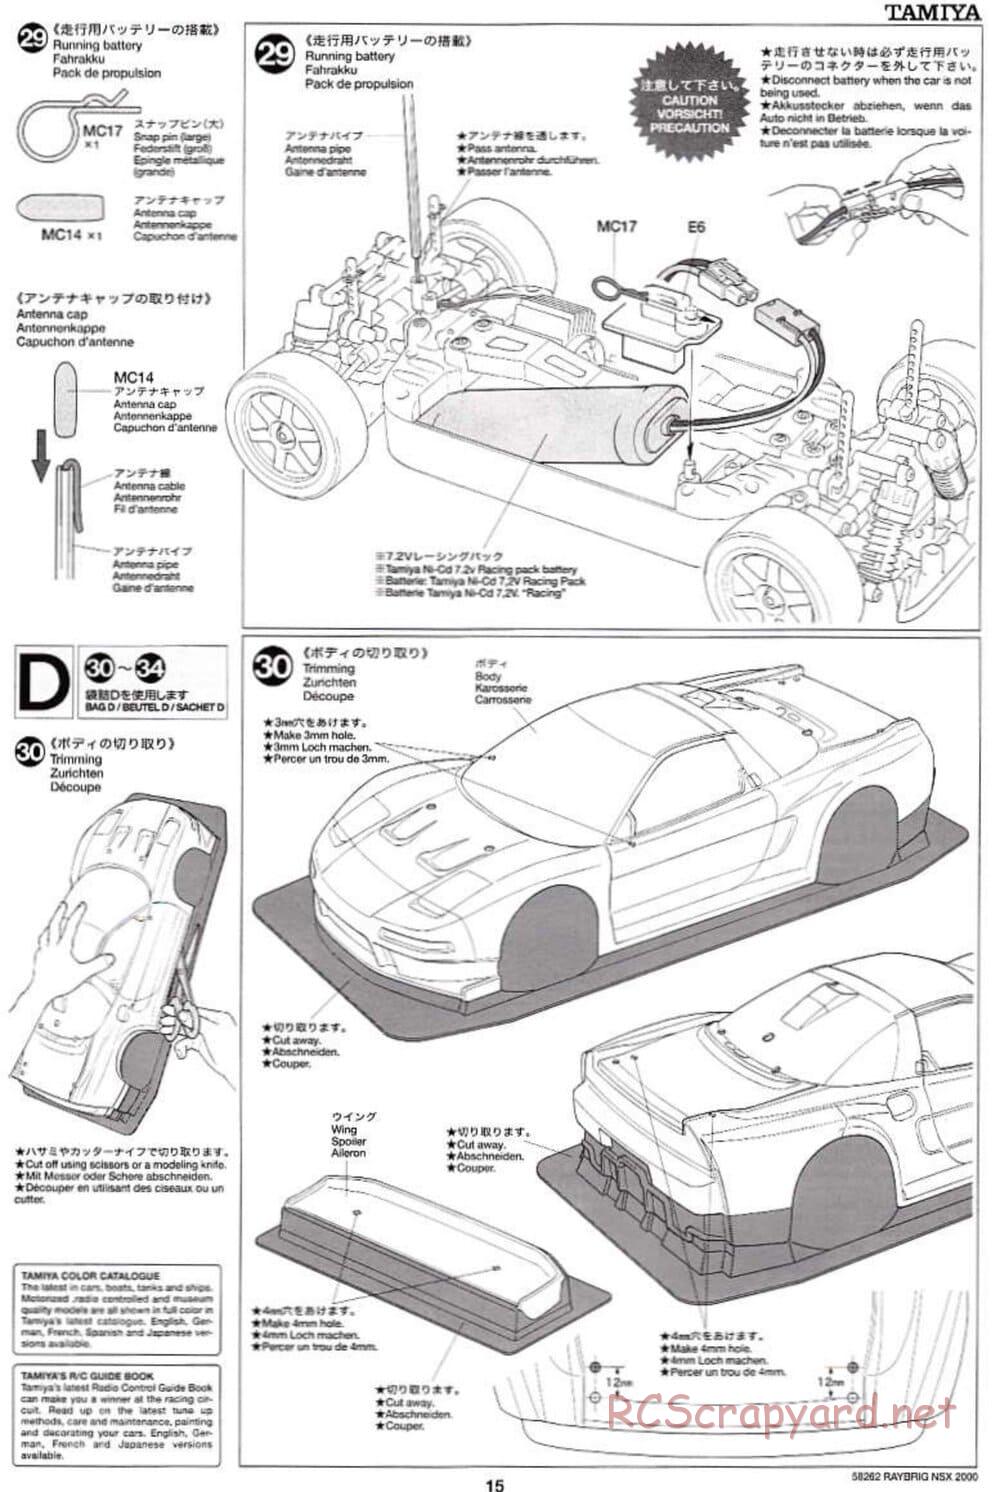 Tamiya - Raybrig NSX 2000 - TB-01 Chassis - Manual - Page 15